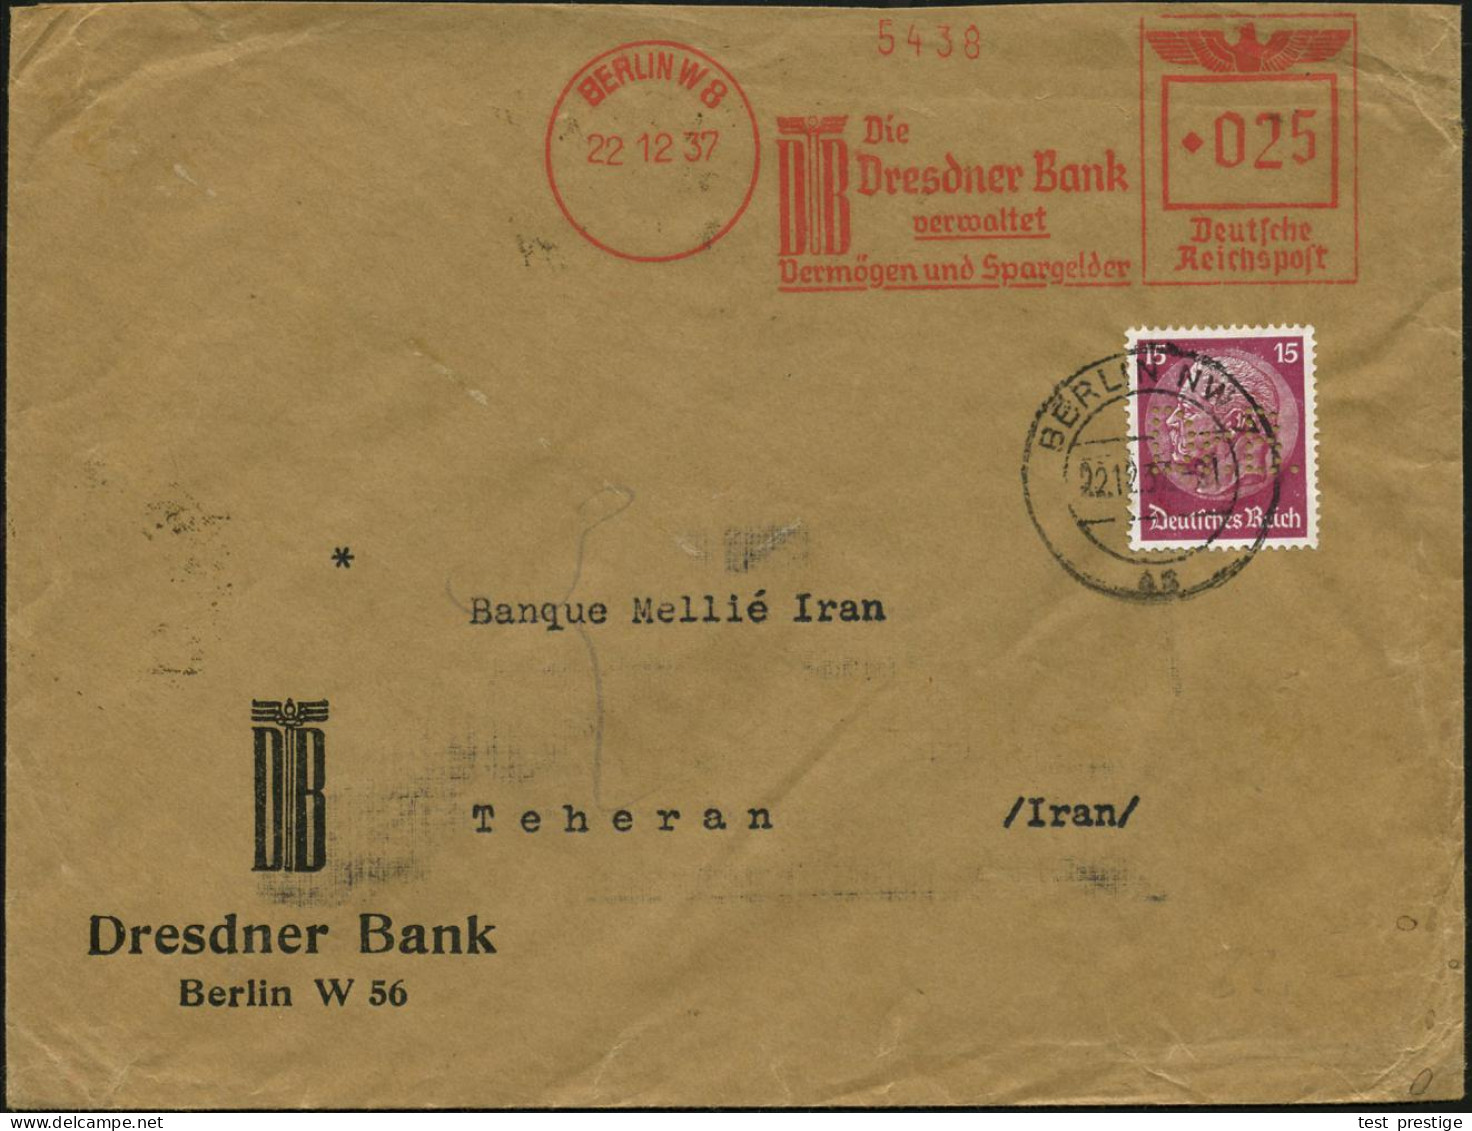 BERLIN W8/ DB/ Die/ Dresdner Bank/ Verwaltet/ Vermögen.. 1937 (22.12.) AFS Francotyp 025 Pf. Francotyp "Reichsadler" + 1 - Other